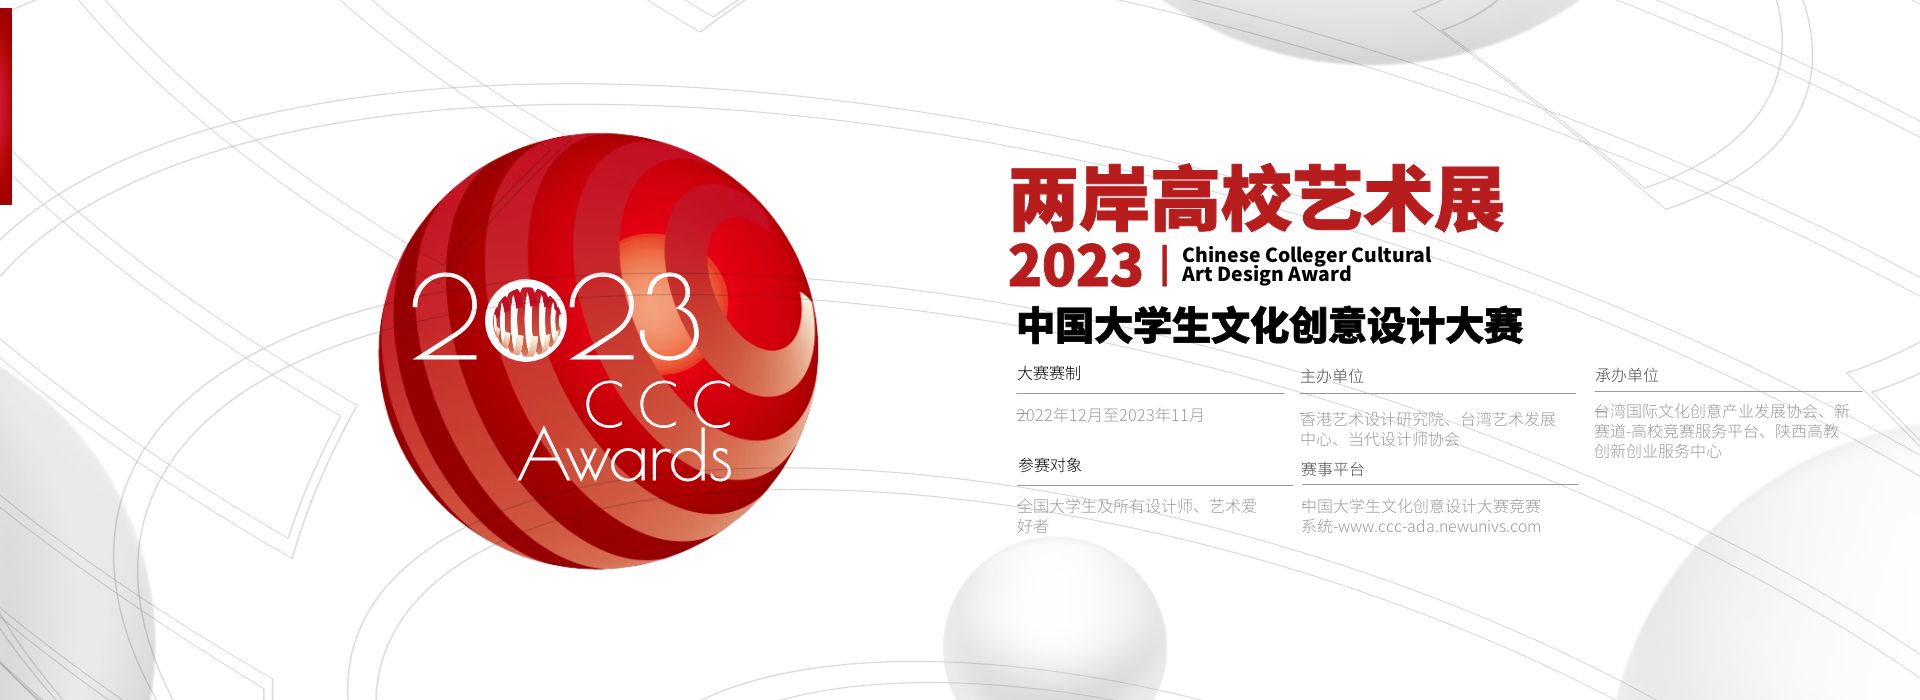 2023年中国大学生文化创意设计大赛-横版海报-中国大学生文化创意设计大赛-大文赛官网